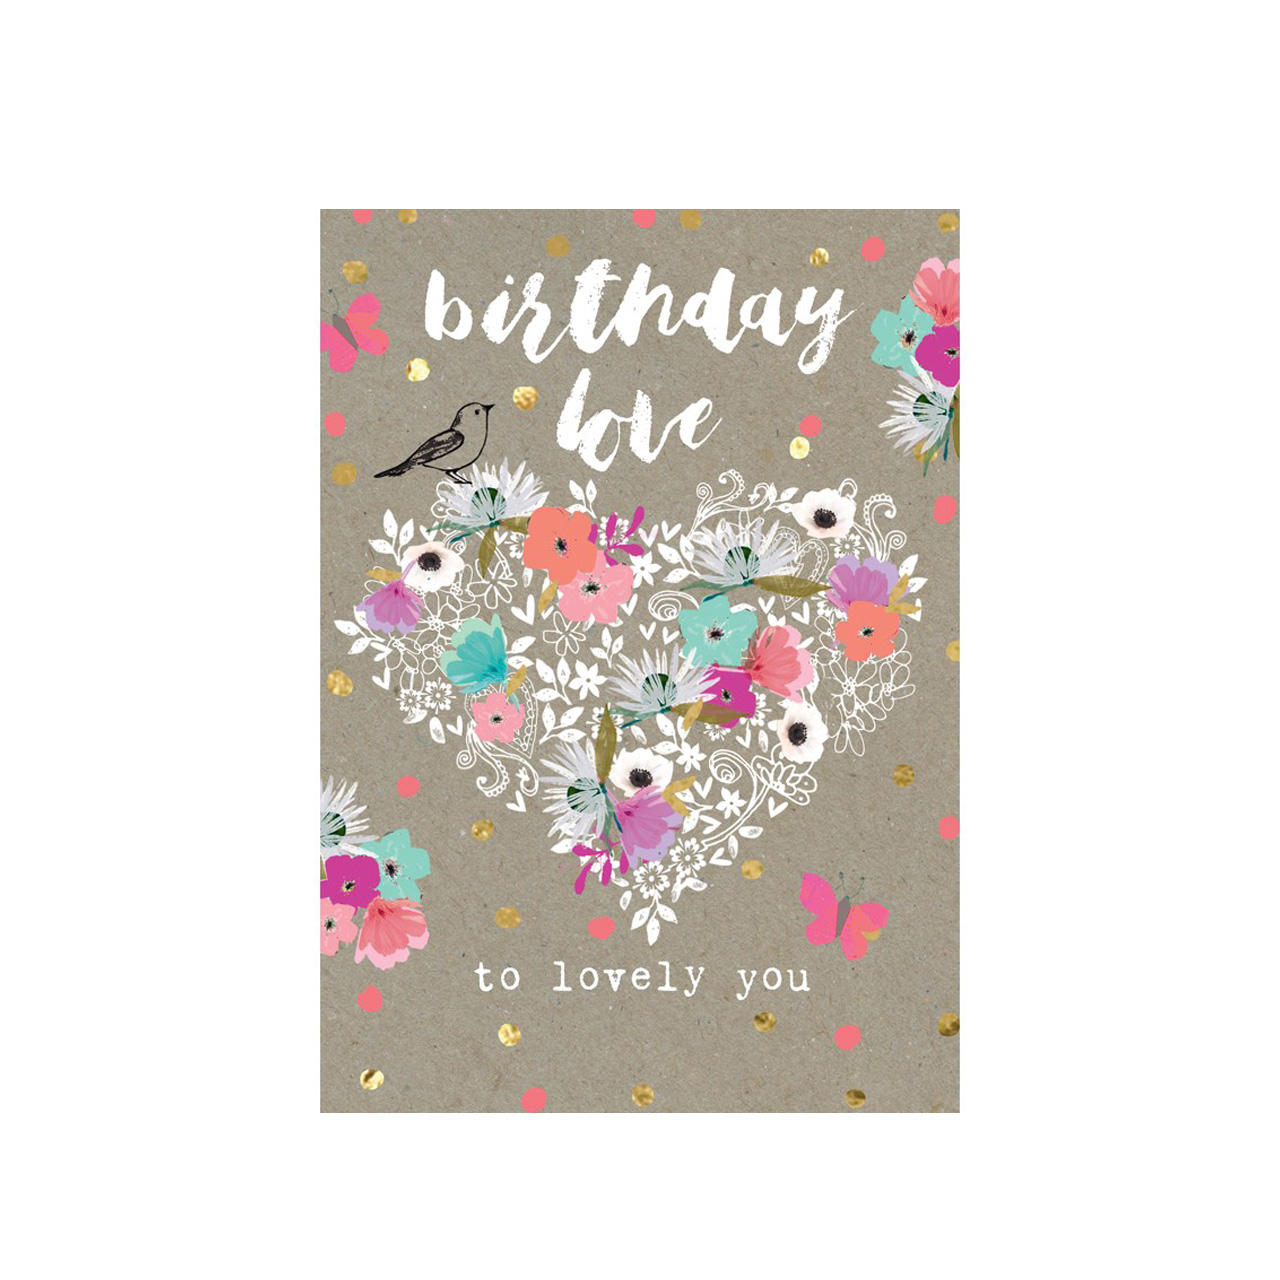 Birthday love to lovely you (Postkarten)